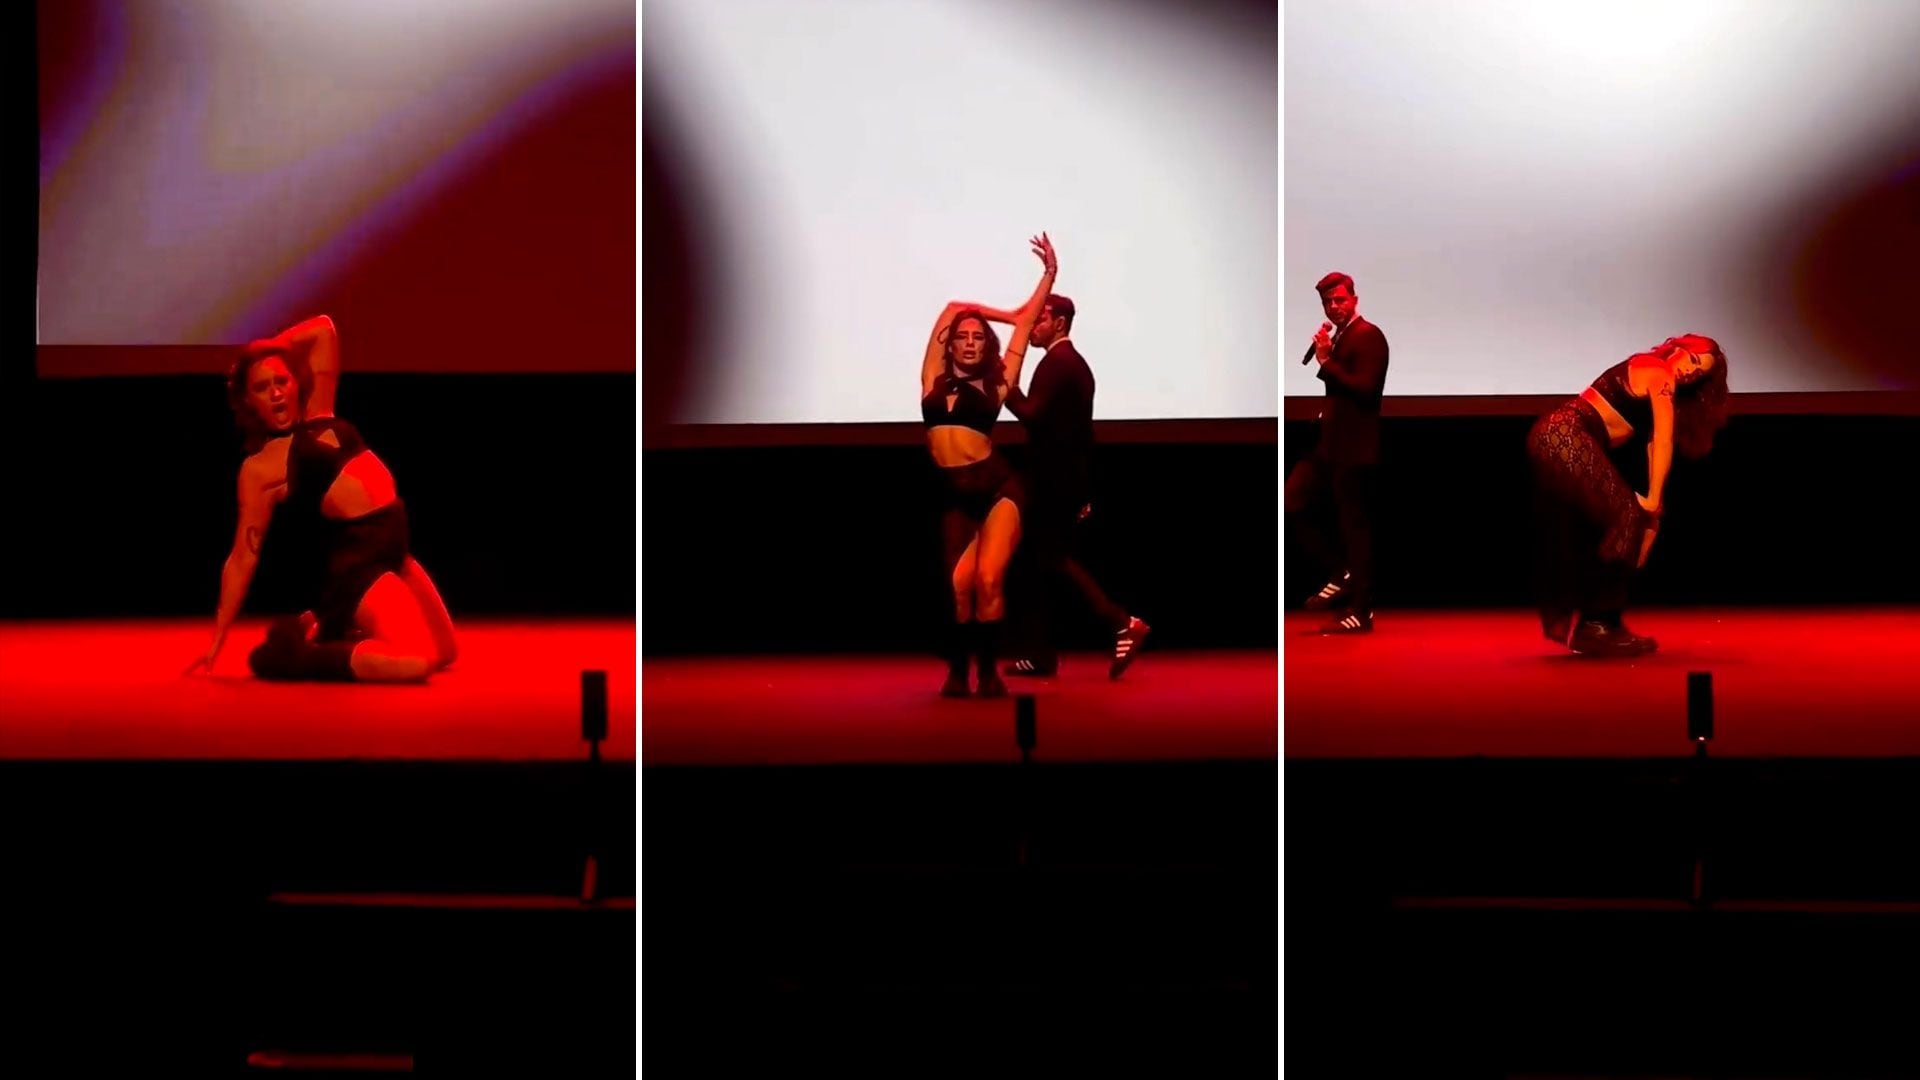 El sensual baile de Flor Jazmín Peña en un teatro de España